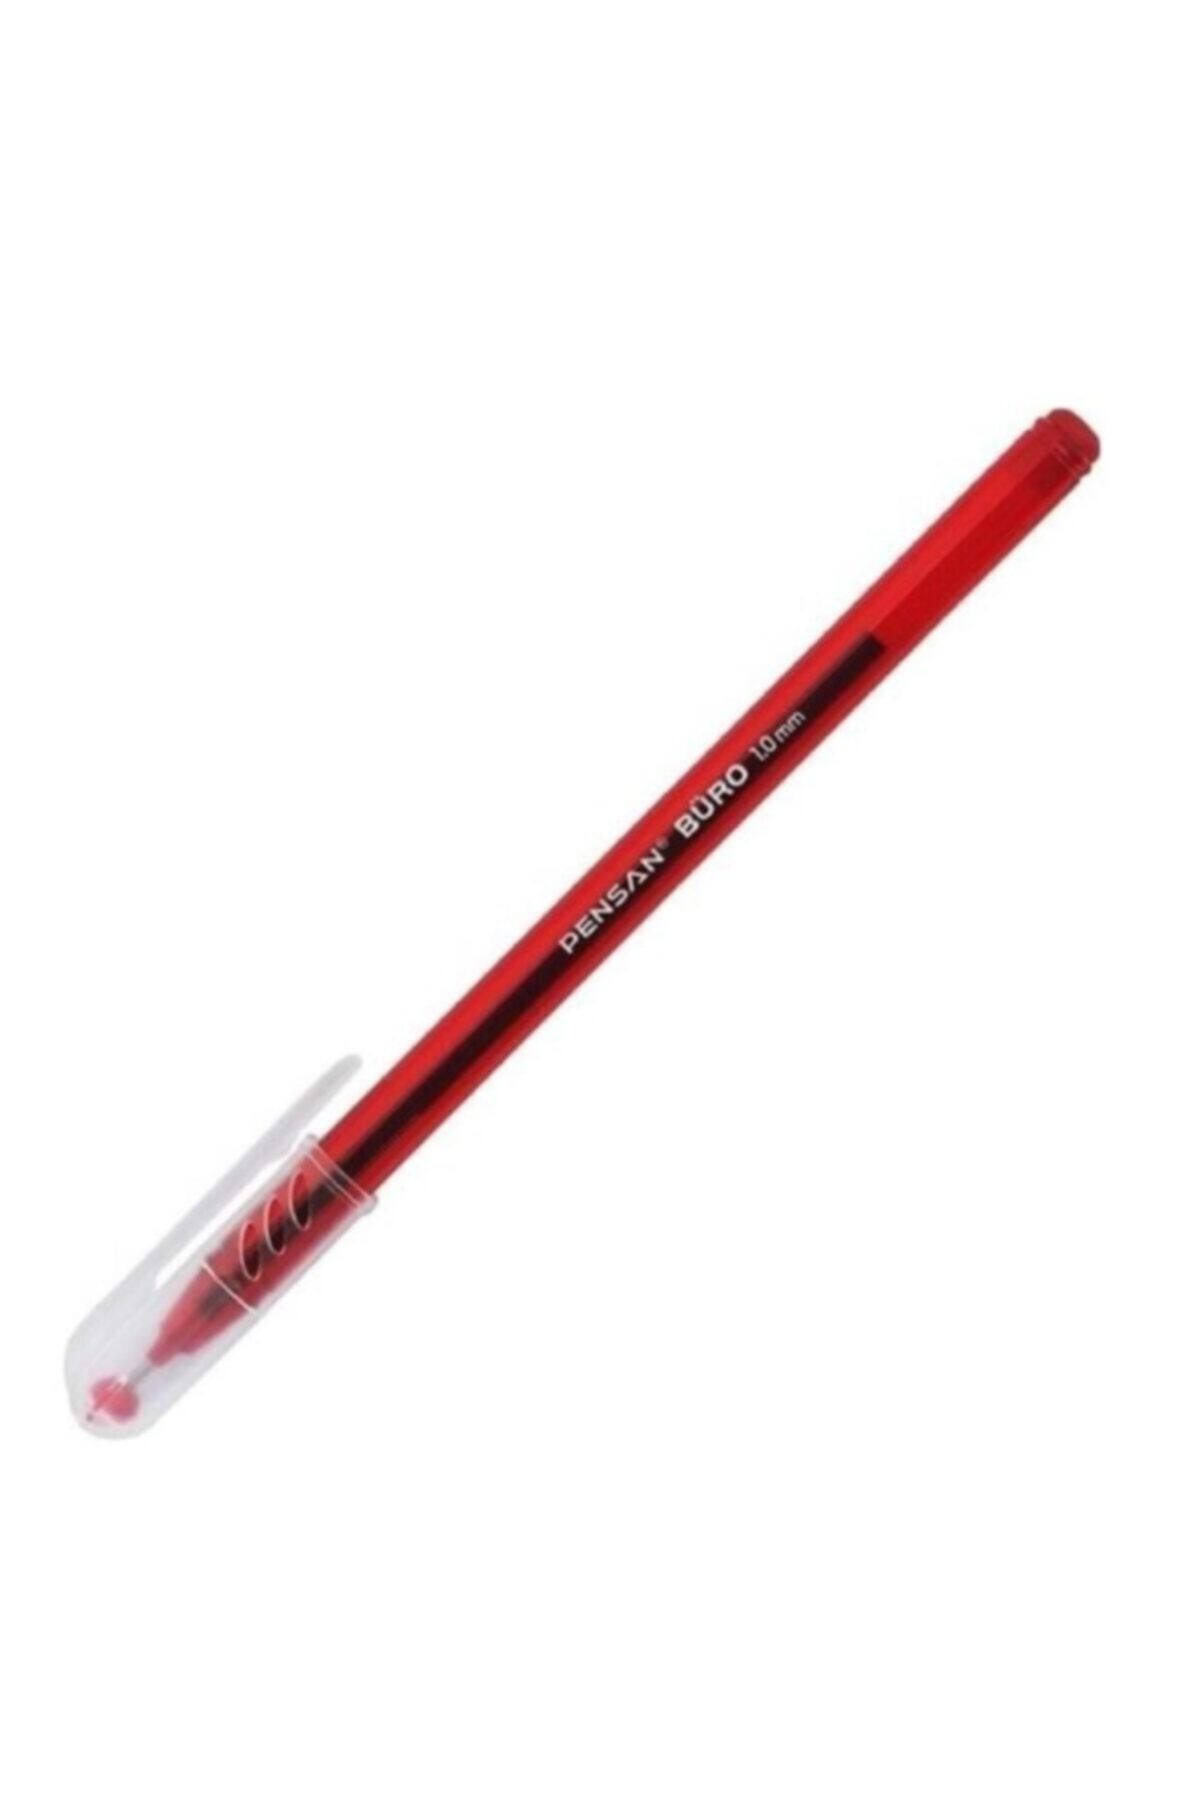 Pensan Büro Kırmızı Tükenmez Kalem 1,0mm